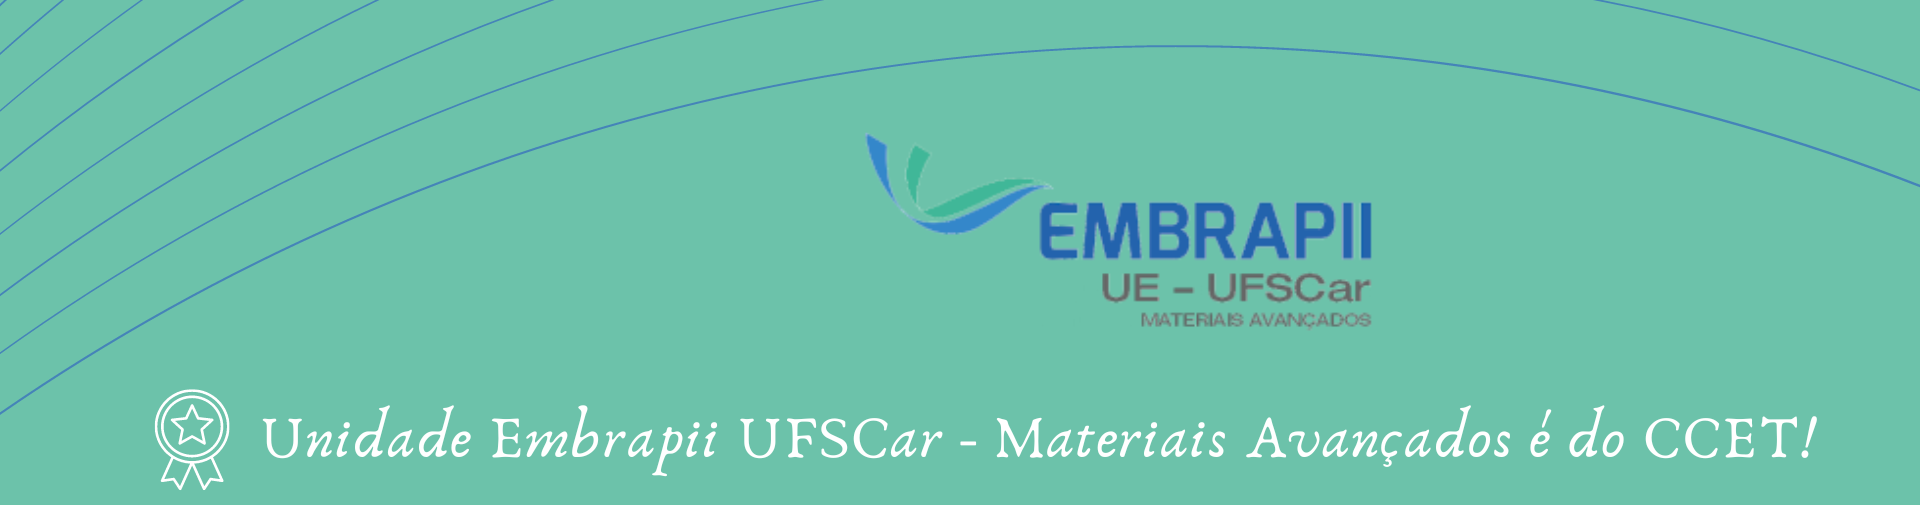 Embrapii UFSCar - Materiais Avançados